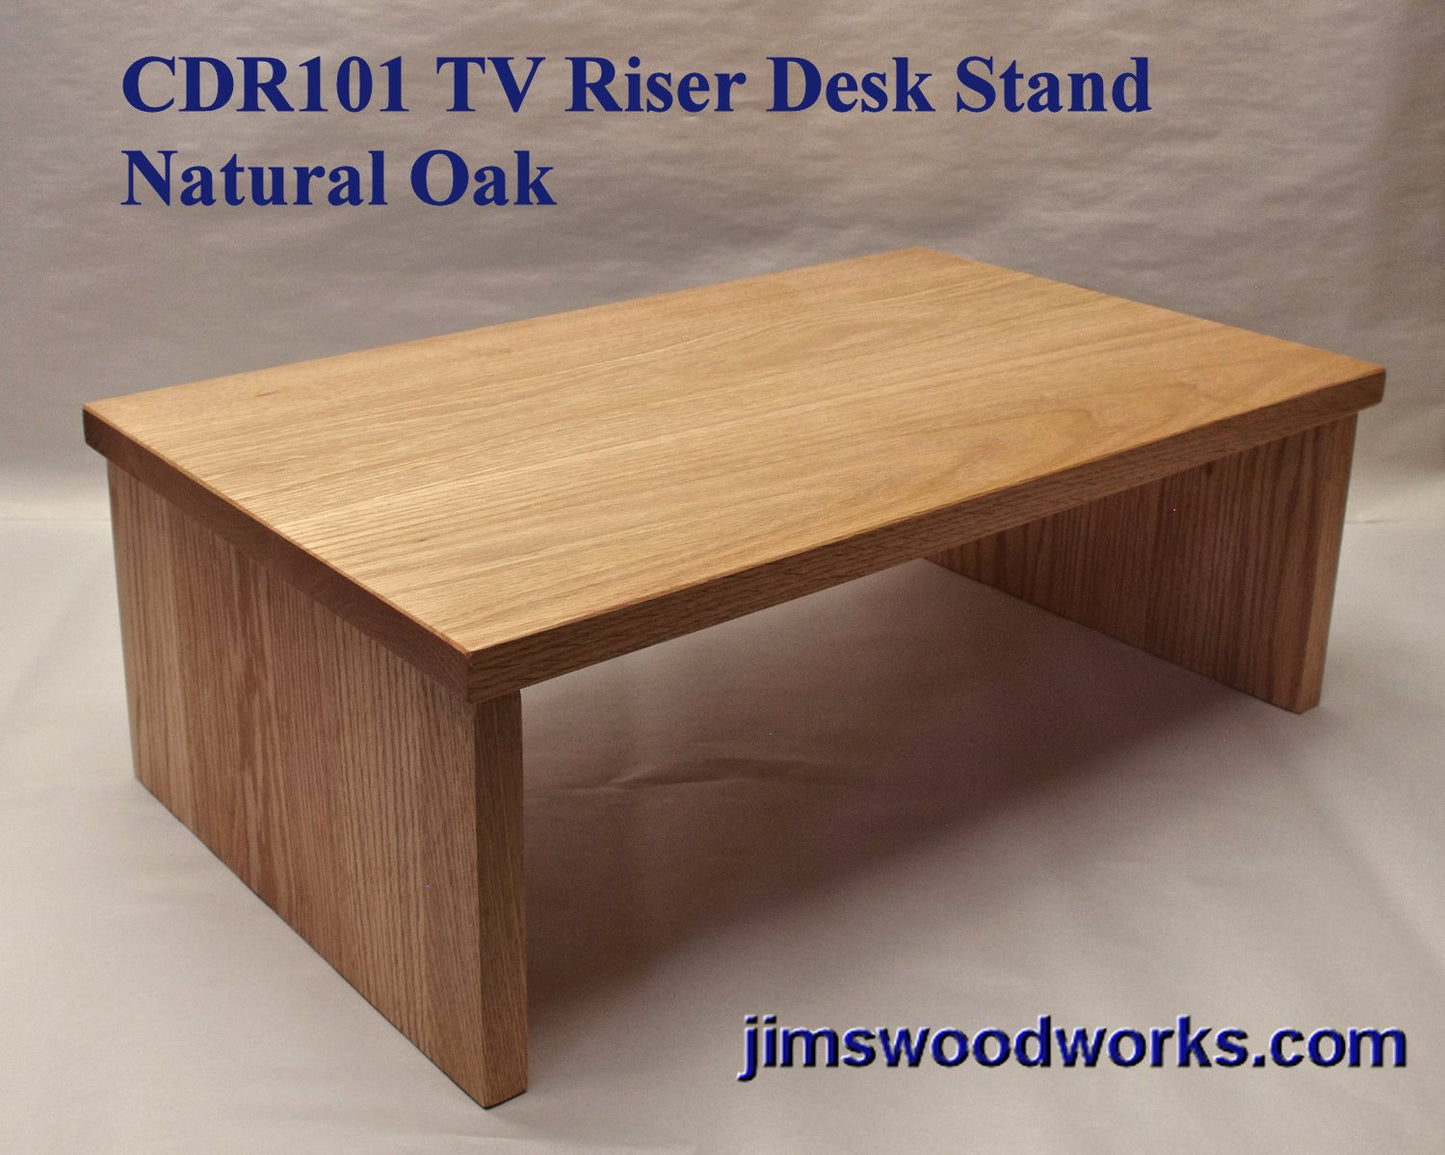 Special Order CDR101 Standard TV Stand Desk Riser - 33" Length